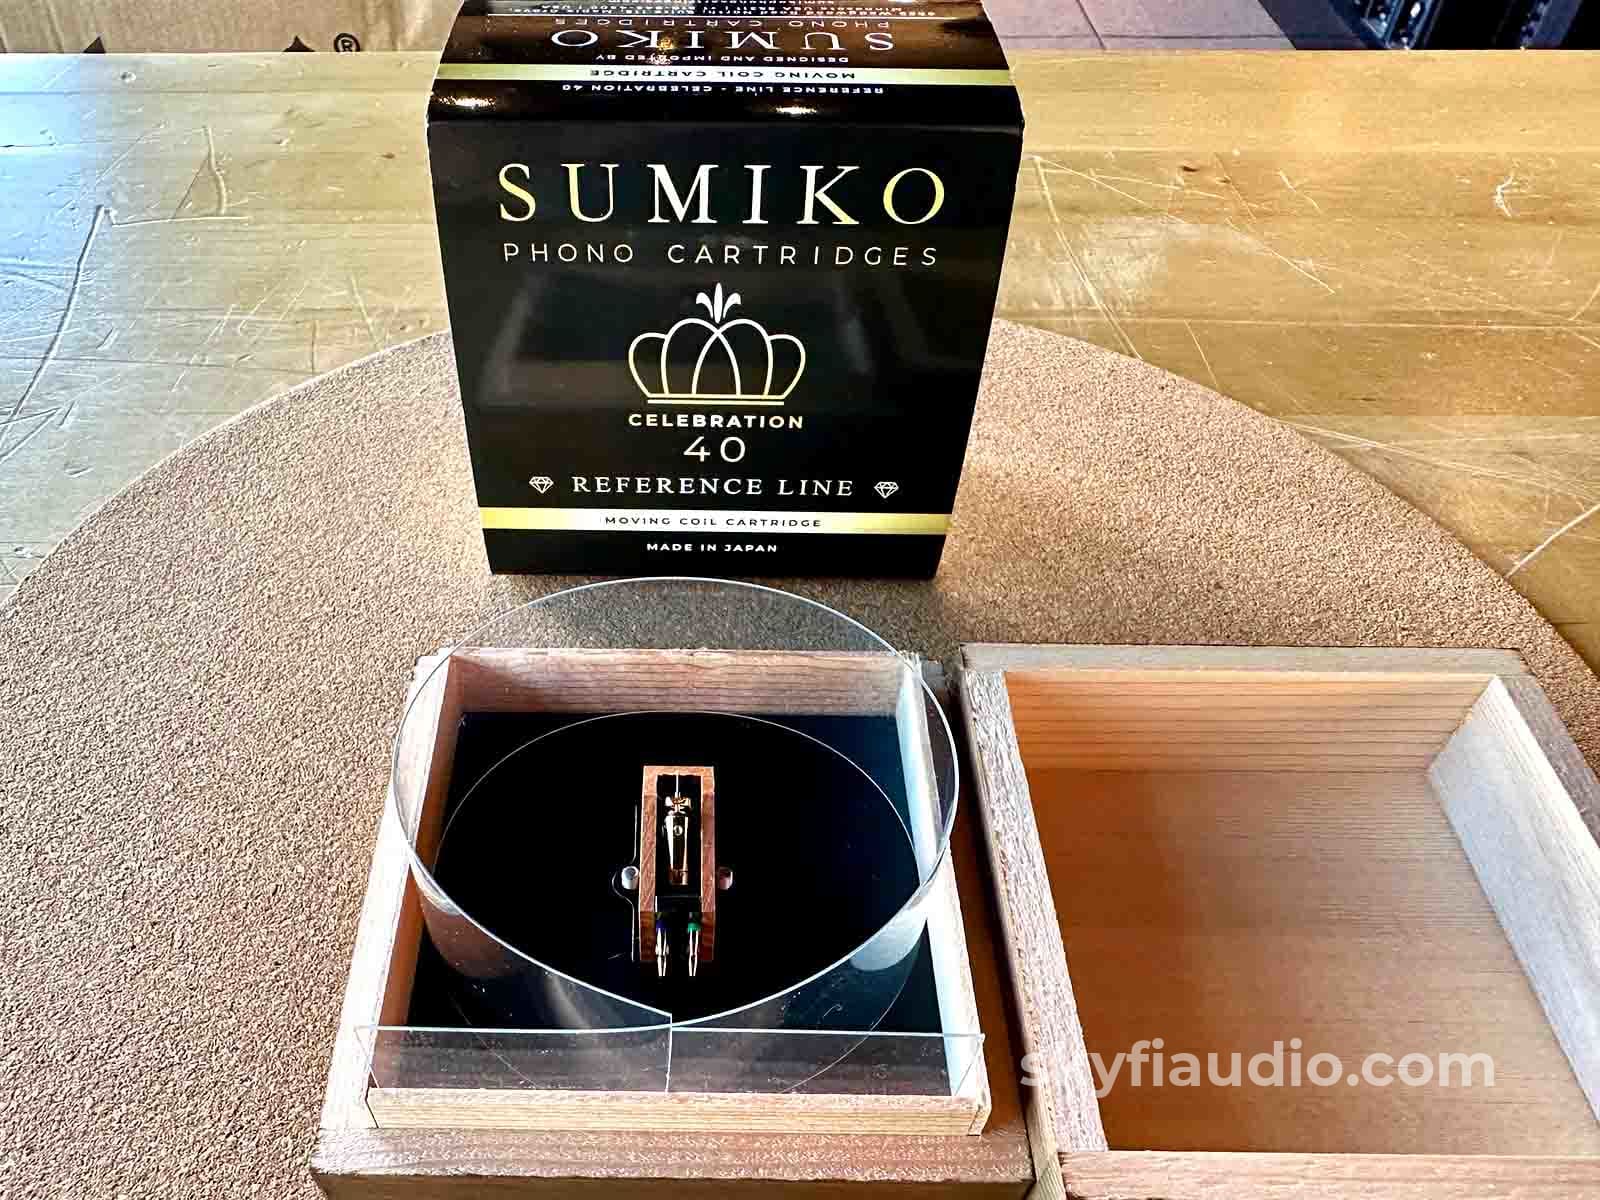 Sumiko Celebration 40 Phono Cartridge New